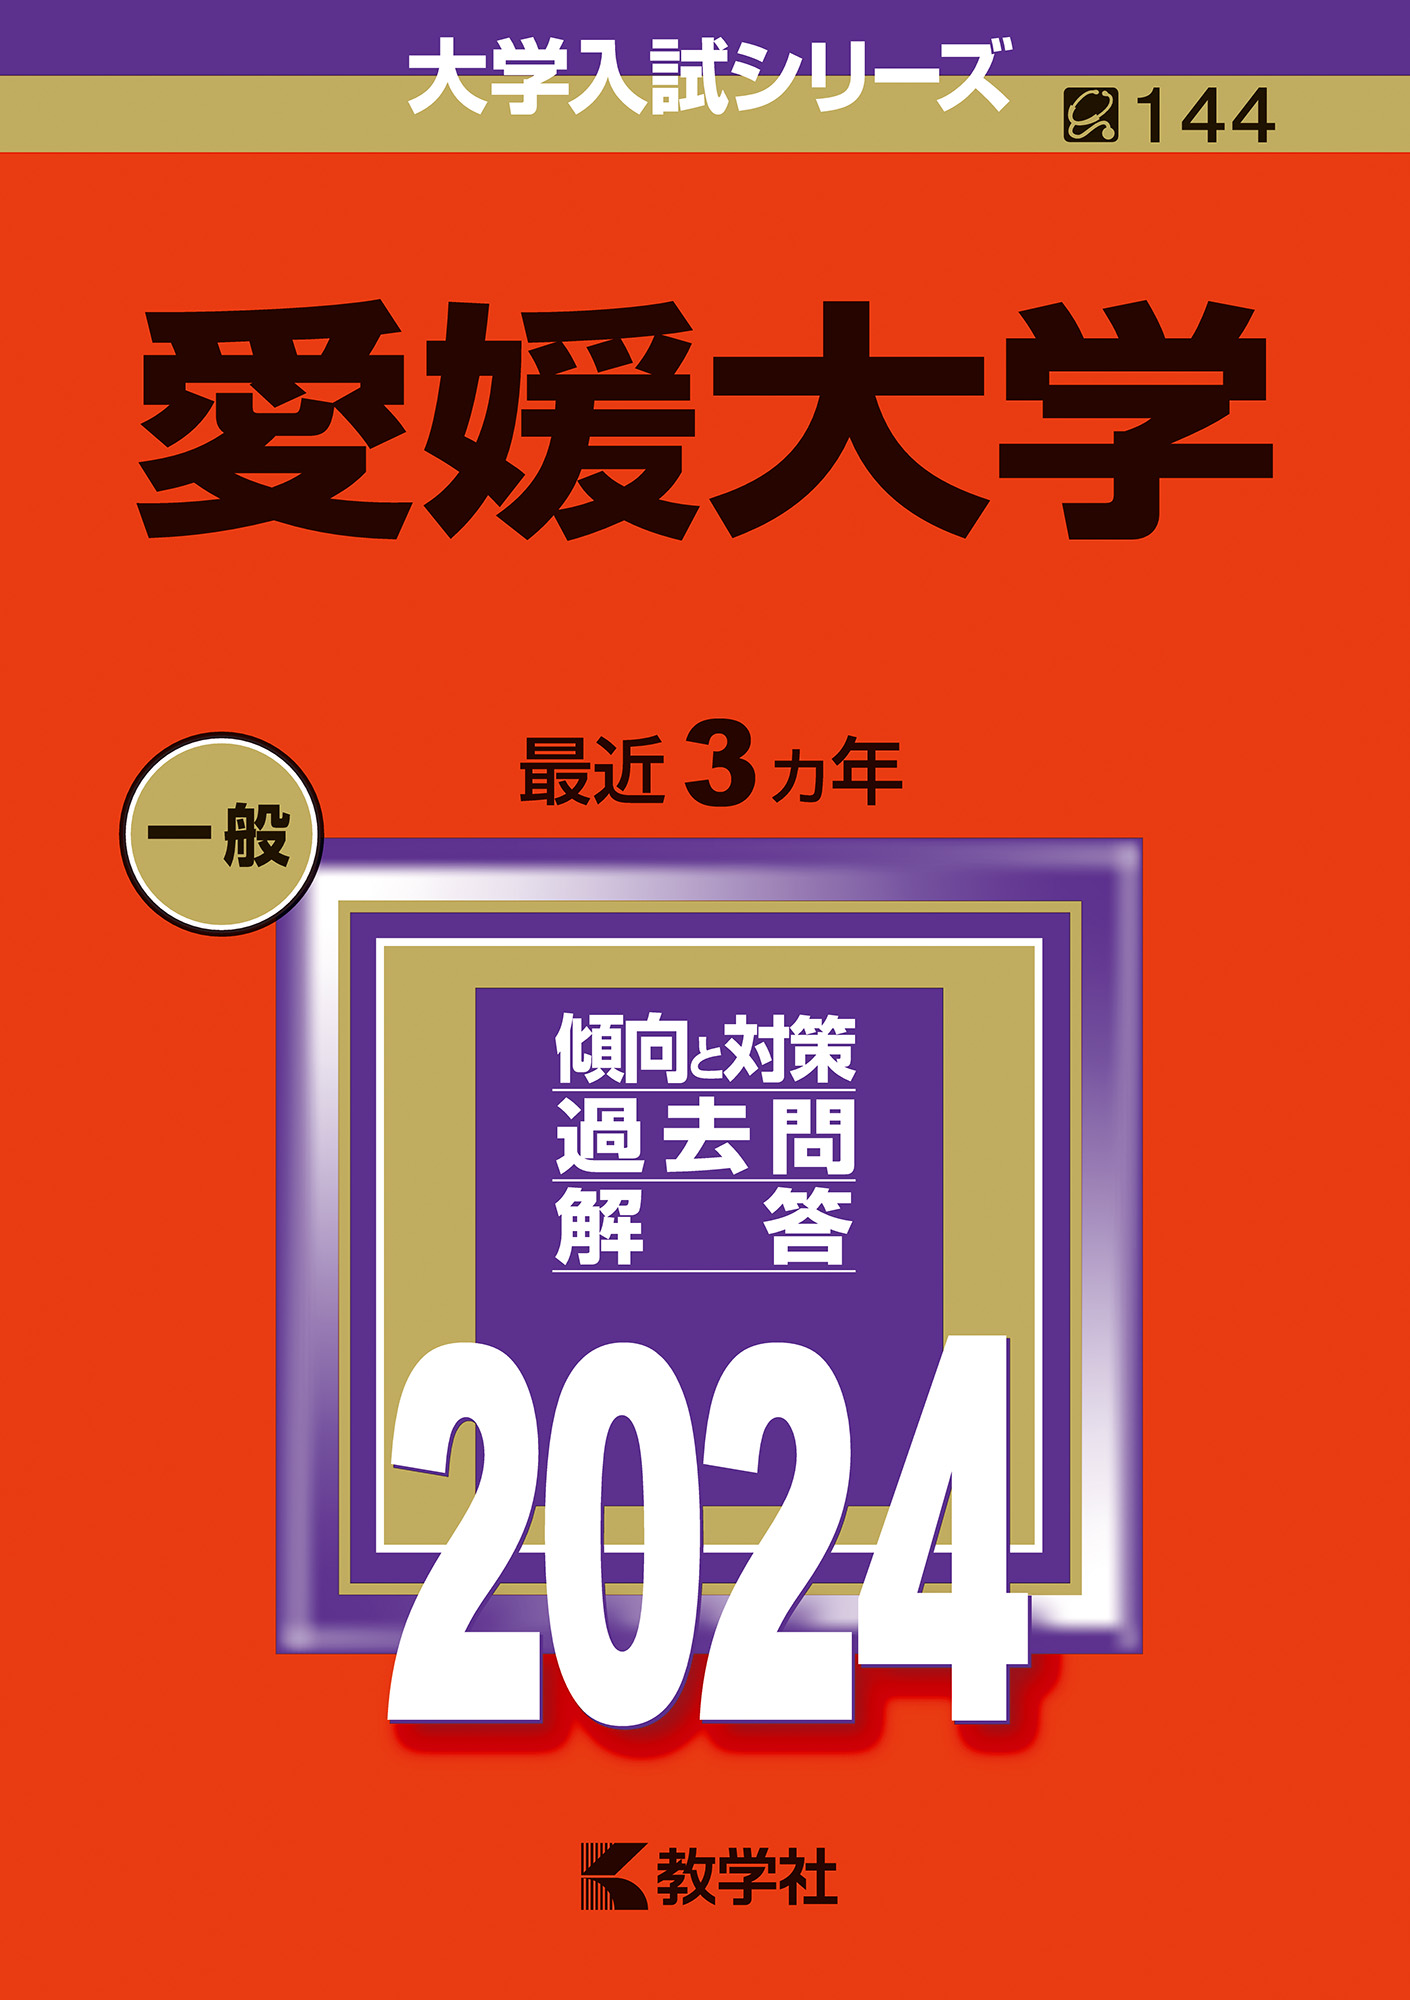 愛媛大学 赤本2022 - 参考書